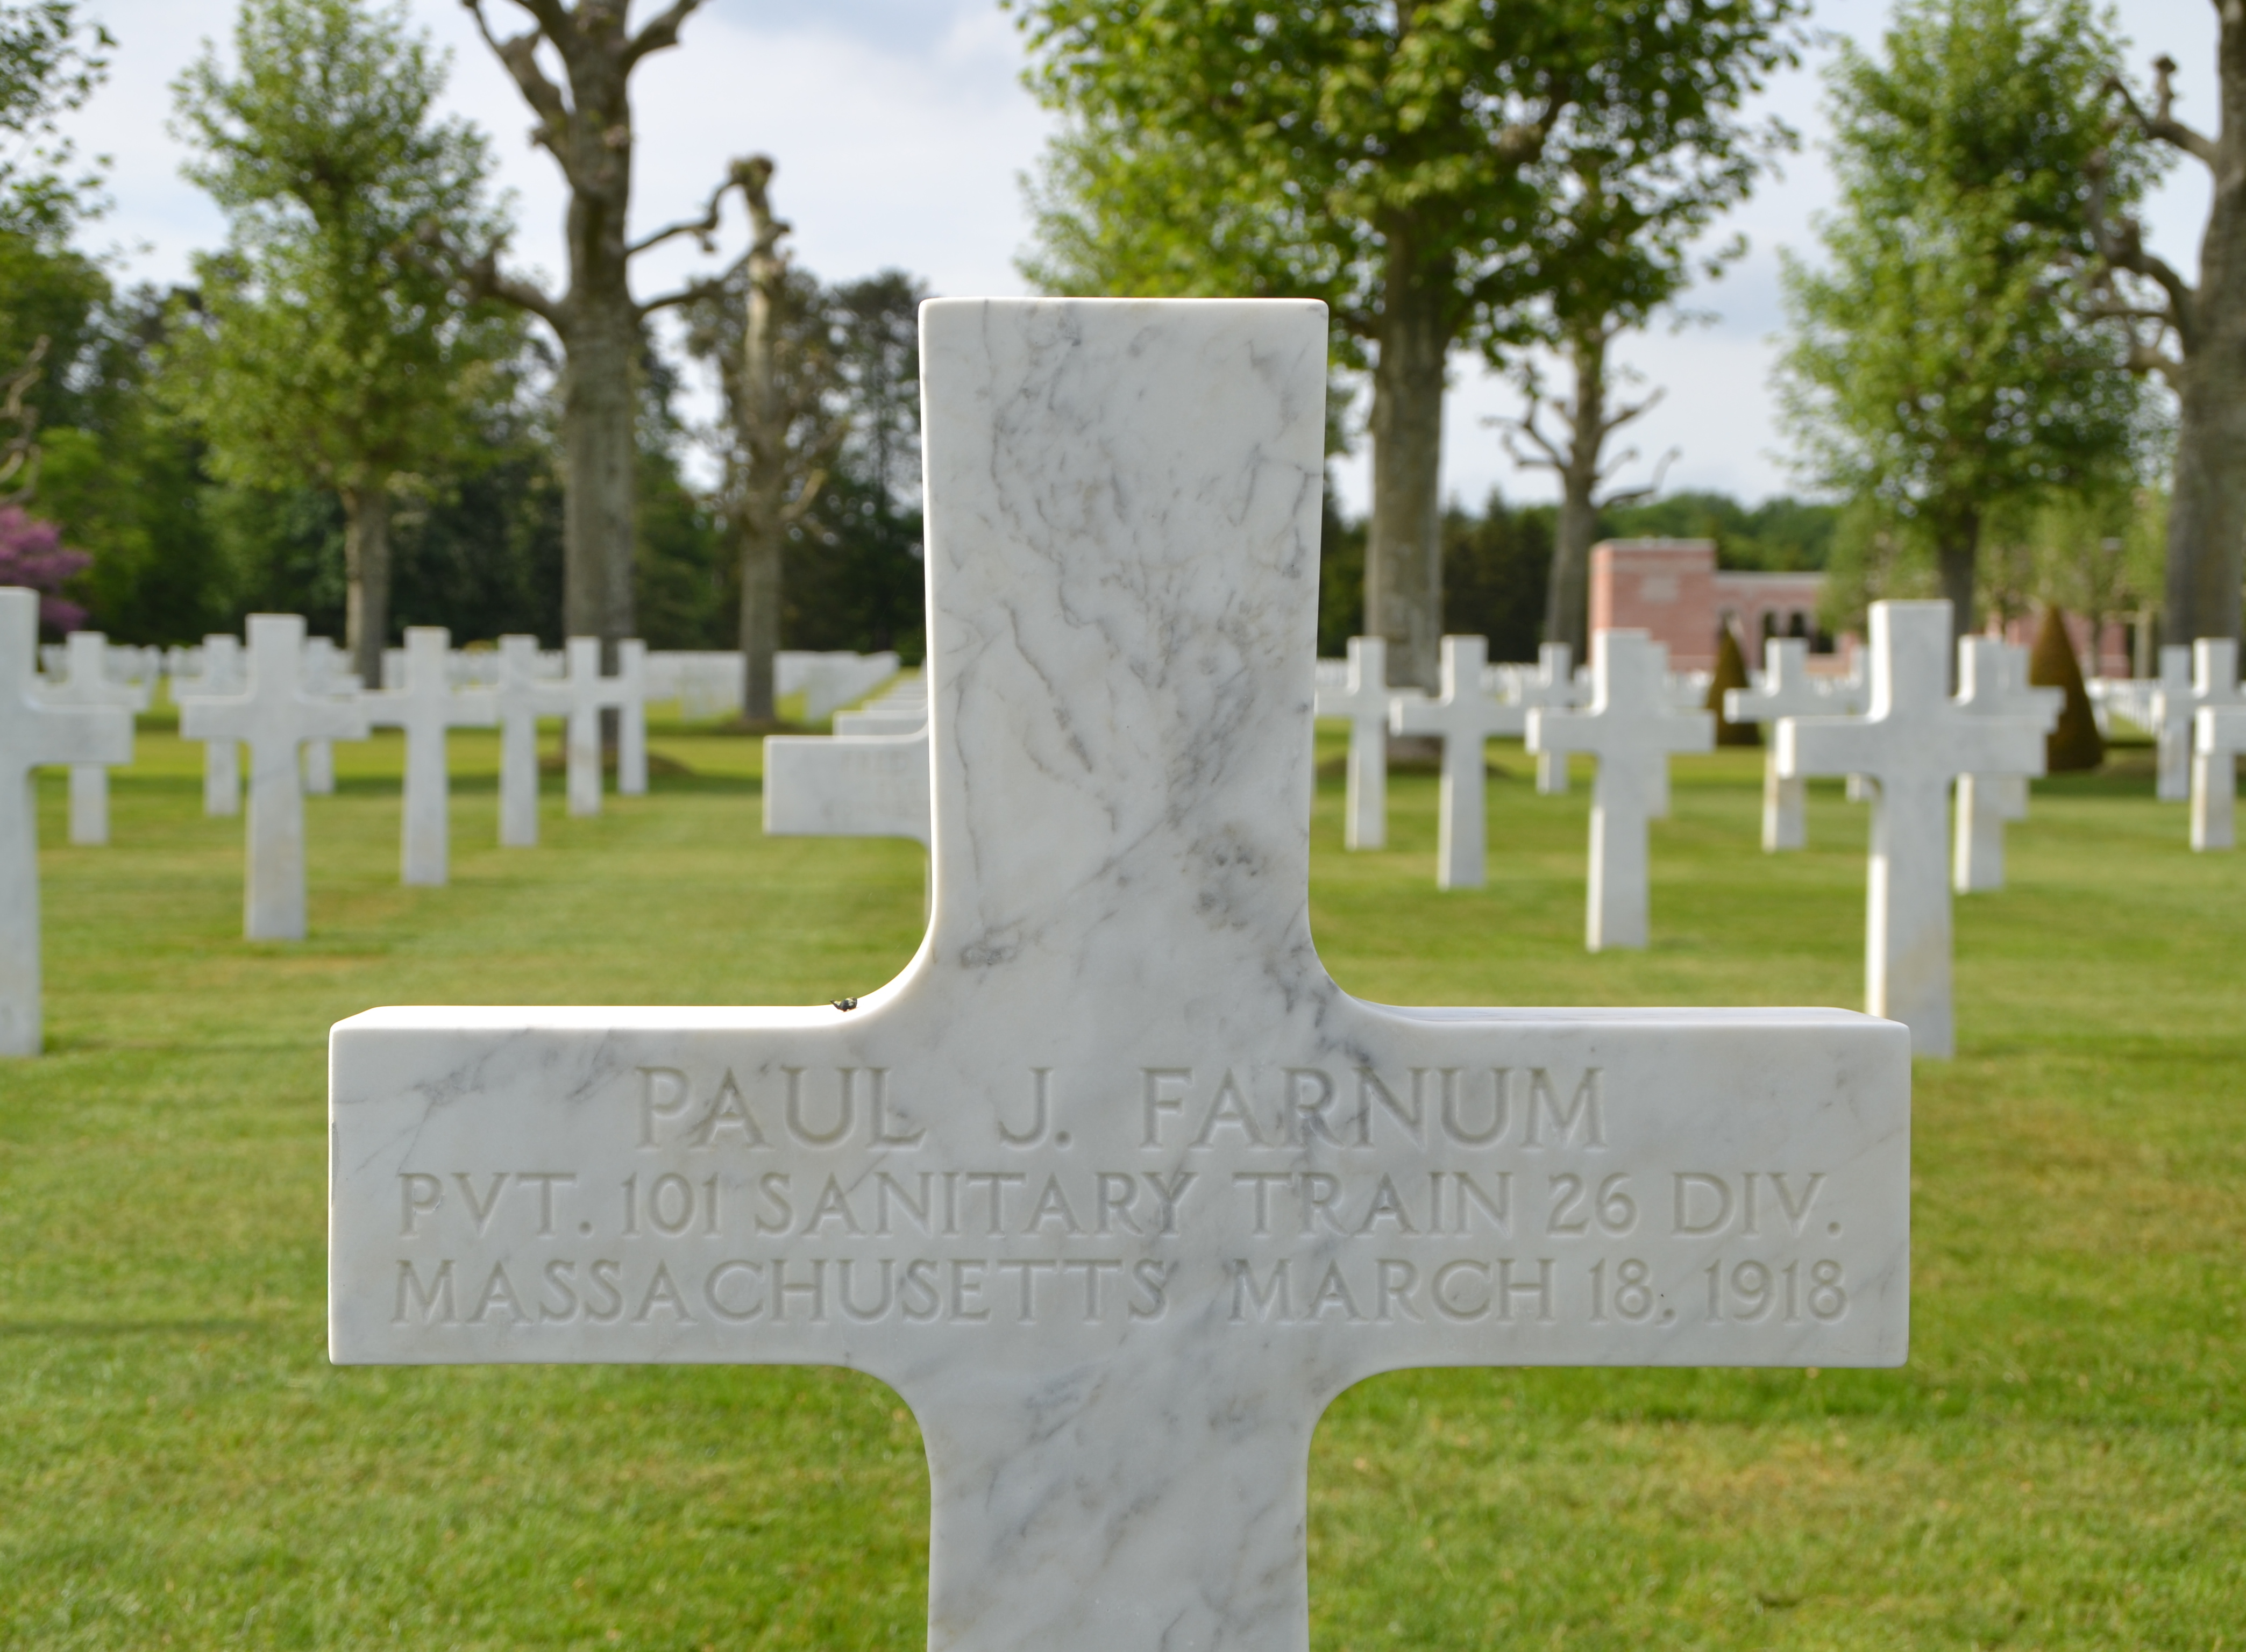 Farnum Paul J sépulture à Seringes-et-Nesles (Aisne)